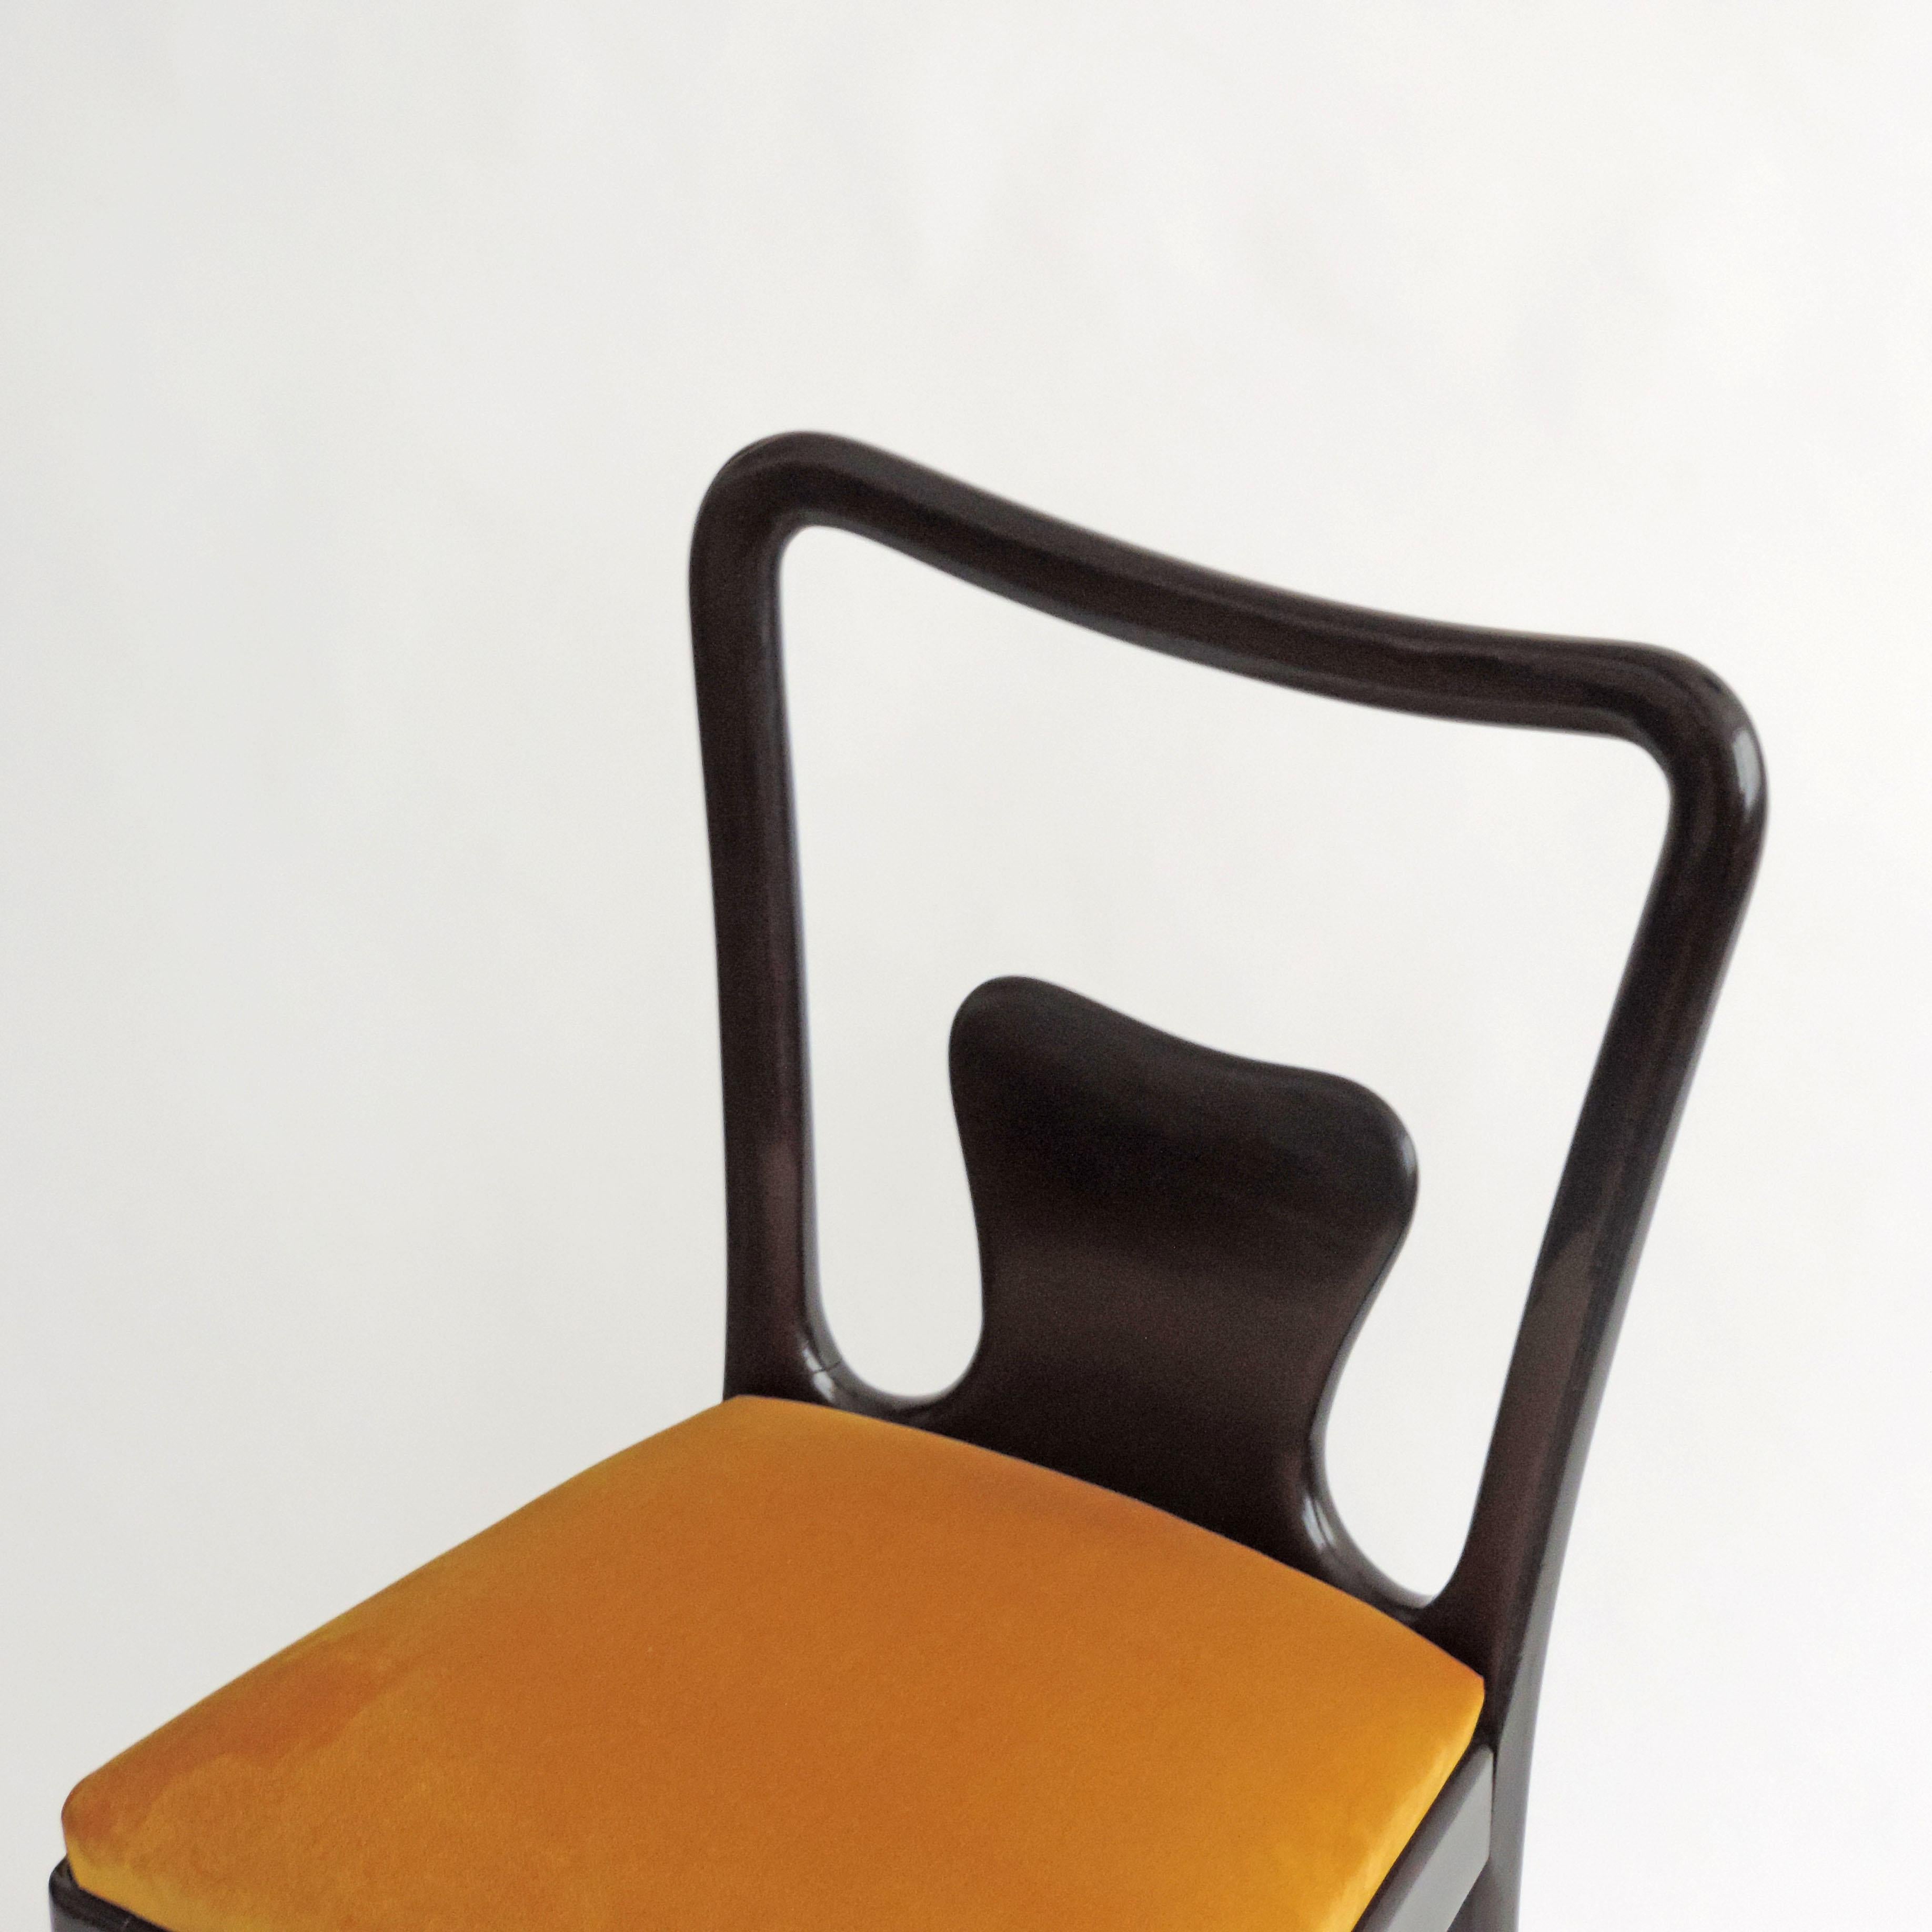 Satz von sechs Esszimmerstühlen aus gebeiztem Holz und gelbem Samt, die dem italienischen Architekten Guglielmo Ulrich zugeschrieben werden.
Hervorragende Handwerkskunst in der Holzschnitzerei.
Sehr stabiler Sitz.